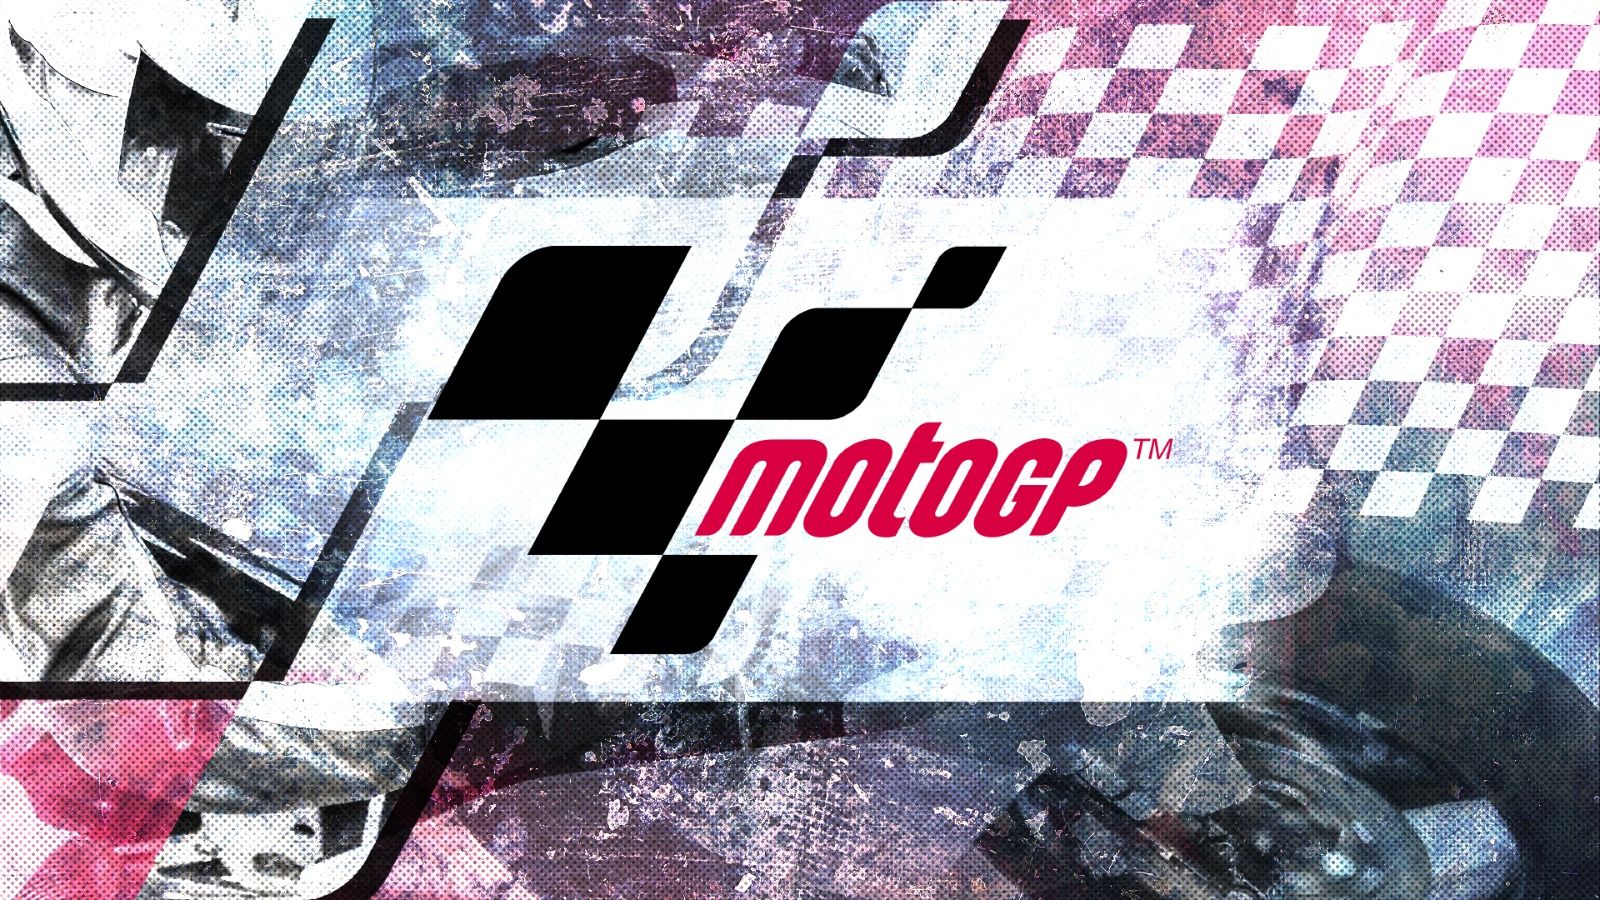 Update Klasemen MotoGP 2023: Gap Pecco Bagnaia-Jorge Martin Tinggal 3 Poin Memasuki GP Indonesia